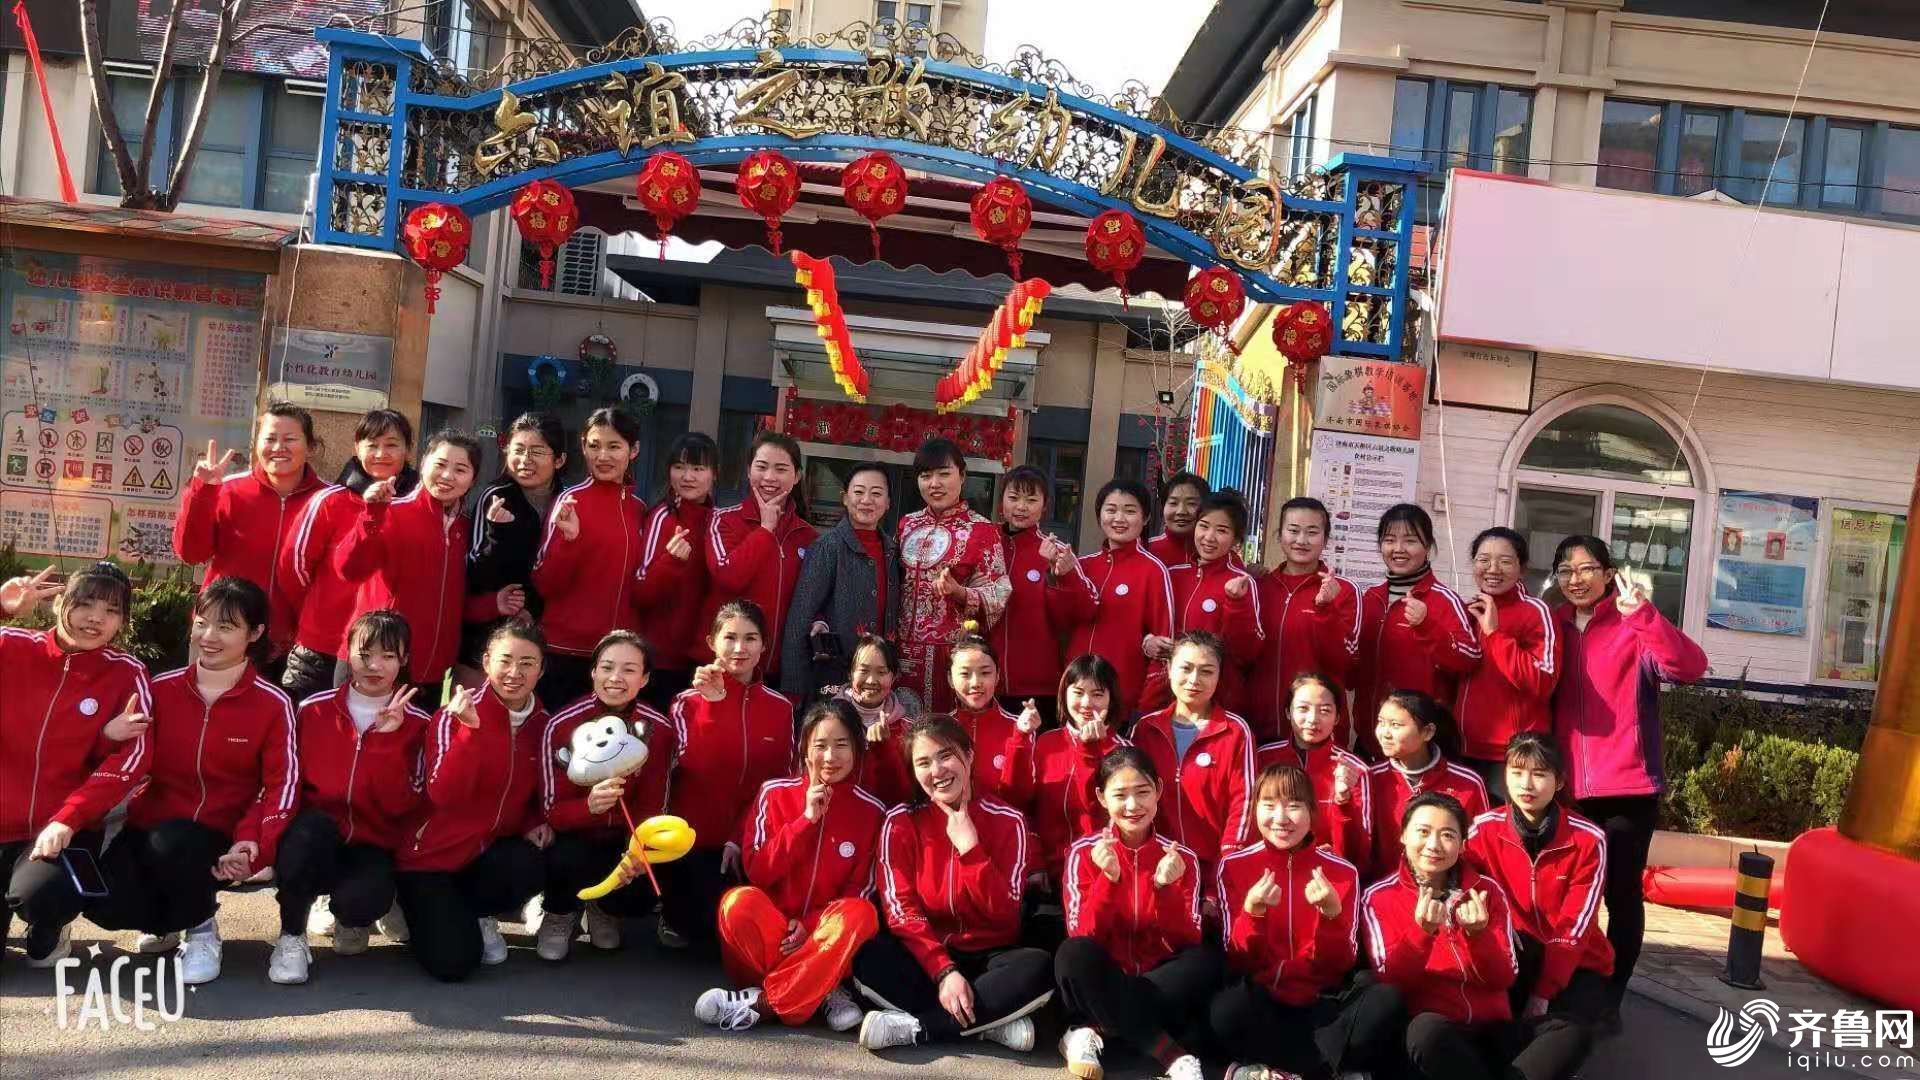 济南天桥区六谊之歌幼儿园第一届年货大集圆满举行